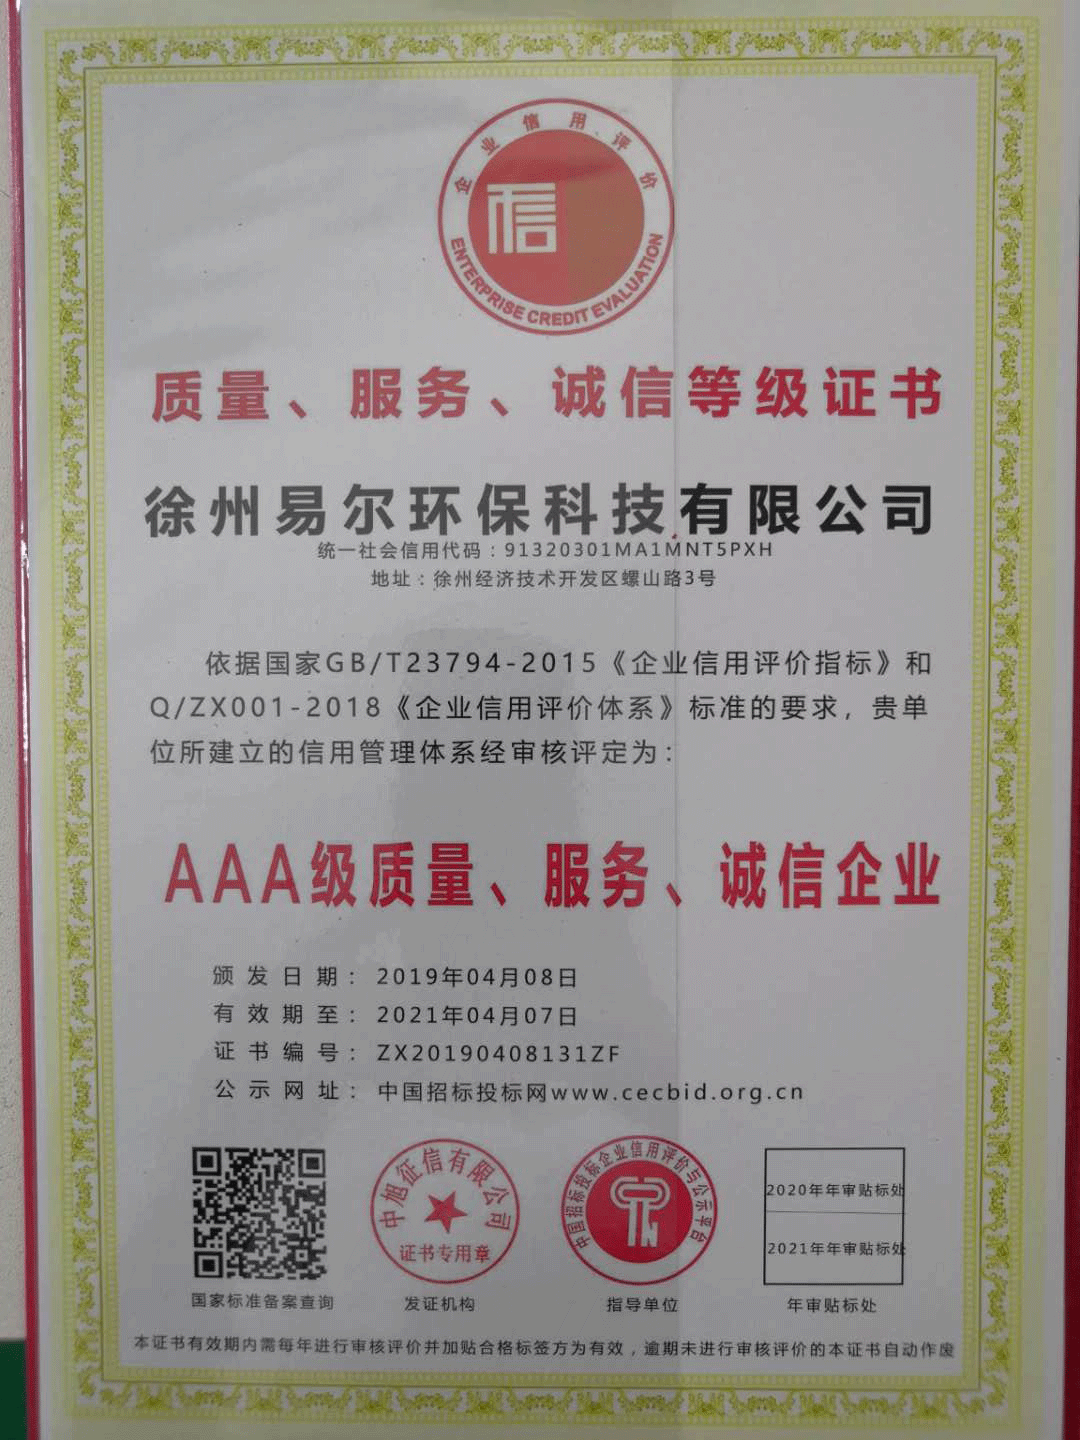 AAA级质量、服务、诚信企业证书